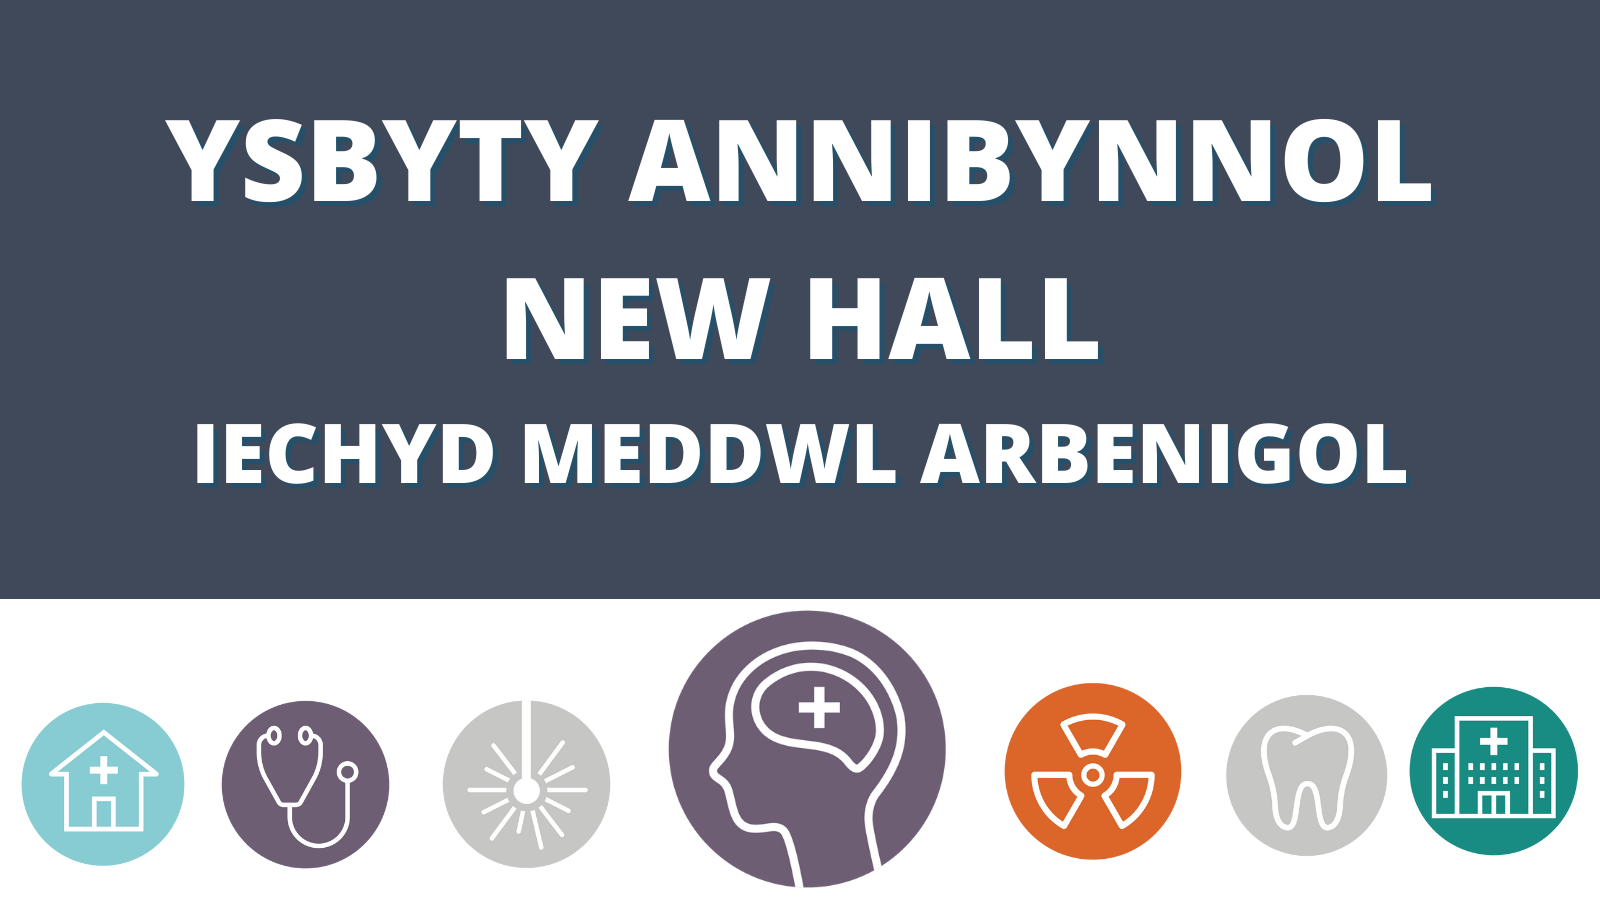 Ysbyty Annibynnol New Hall Iechyd Meddwl Arbenigol